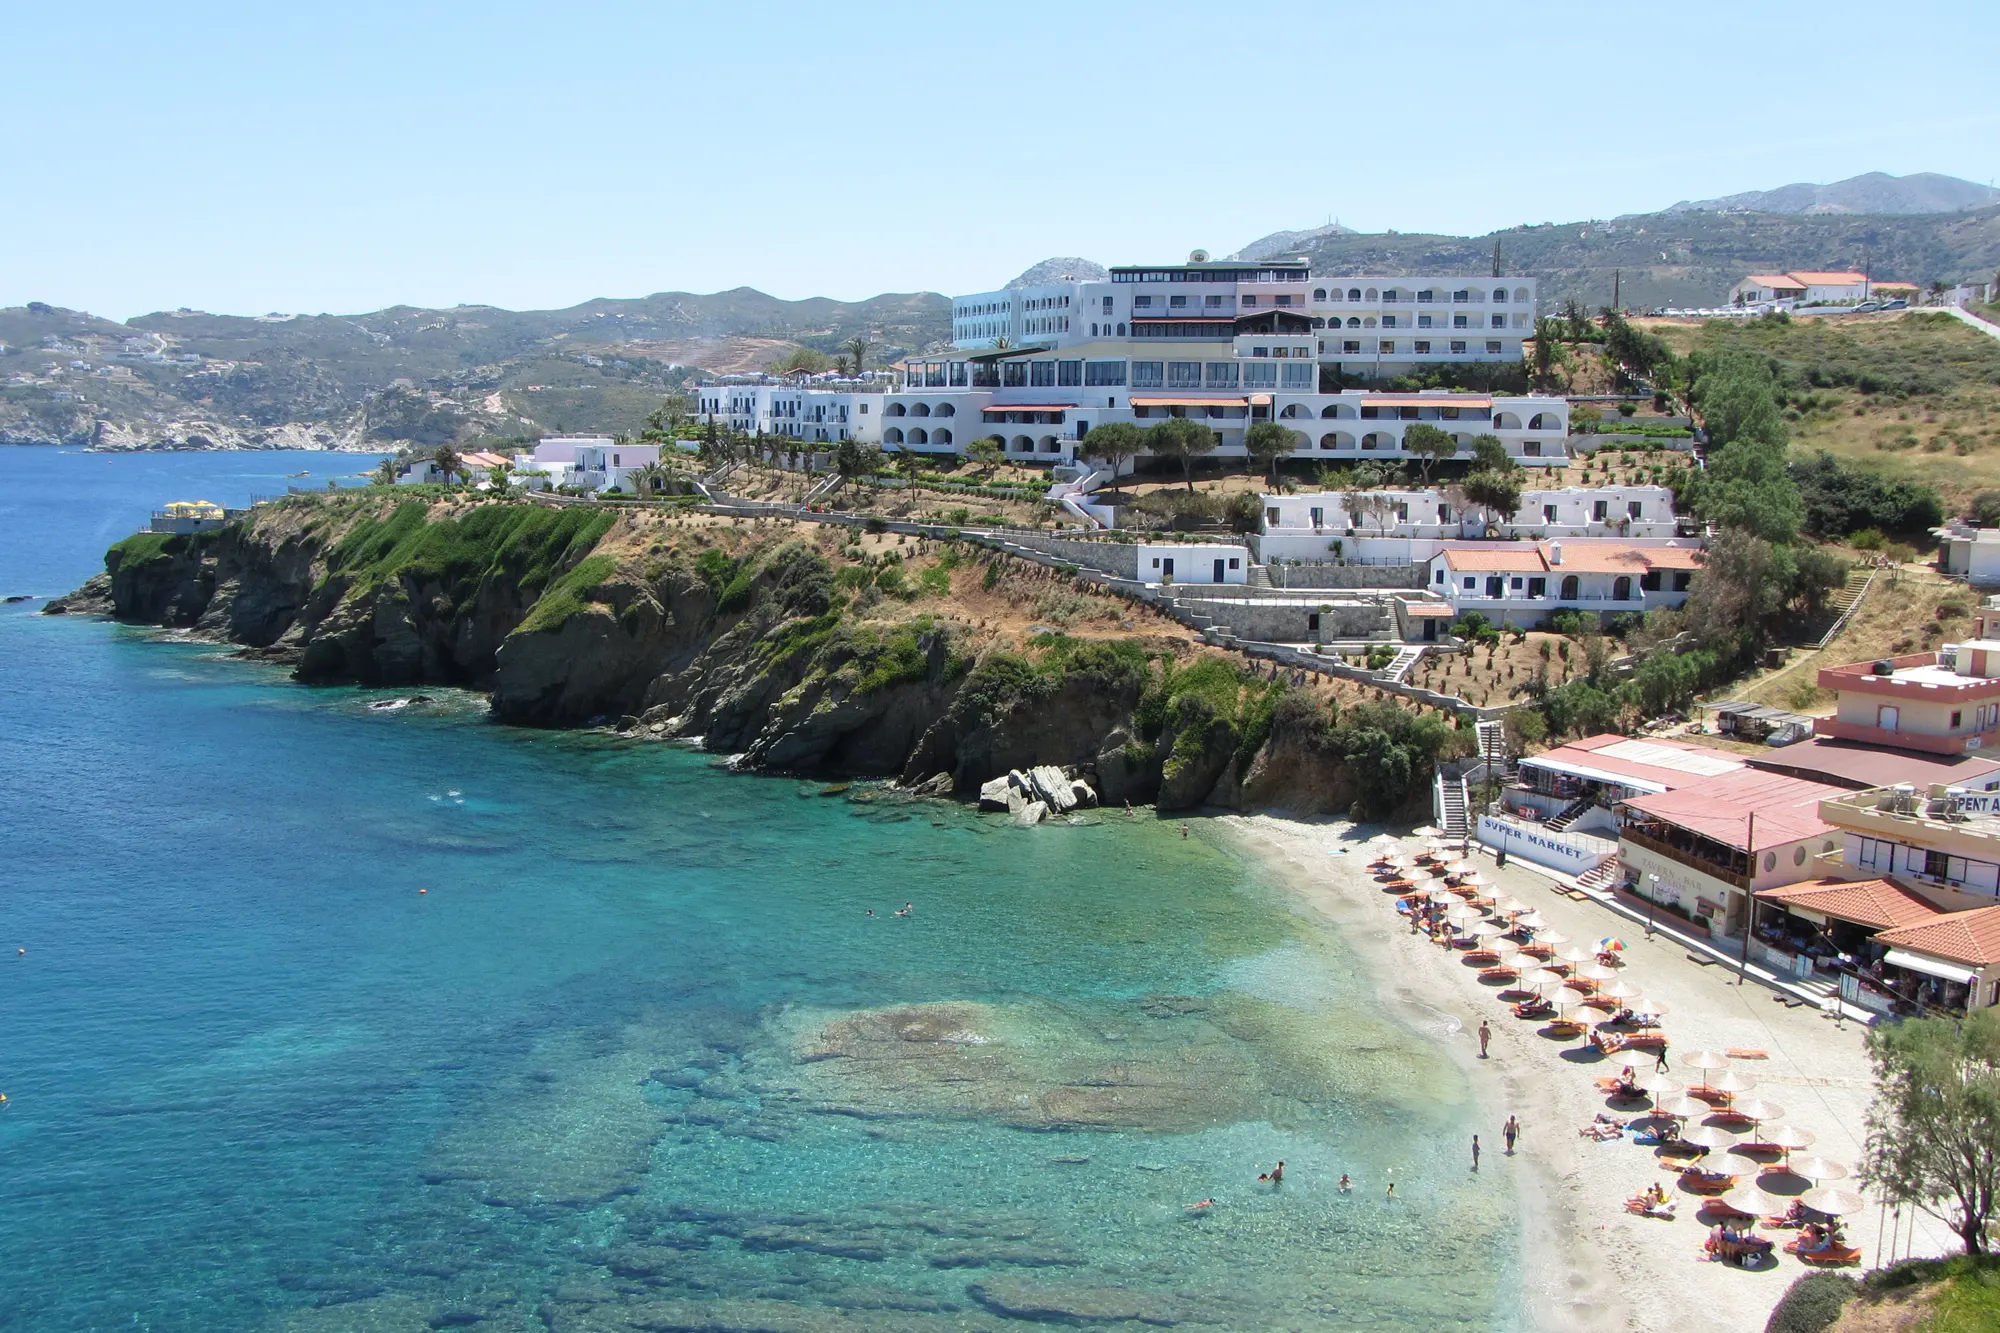 Waar kun je dit najaar het beste naar toe voor een vakantie? Kreta